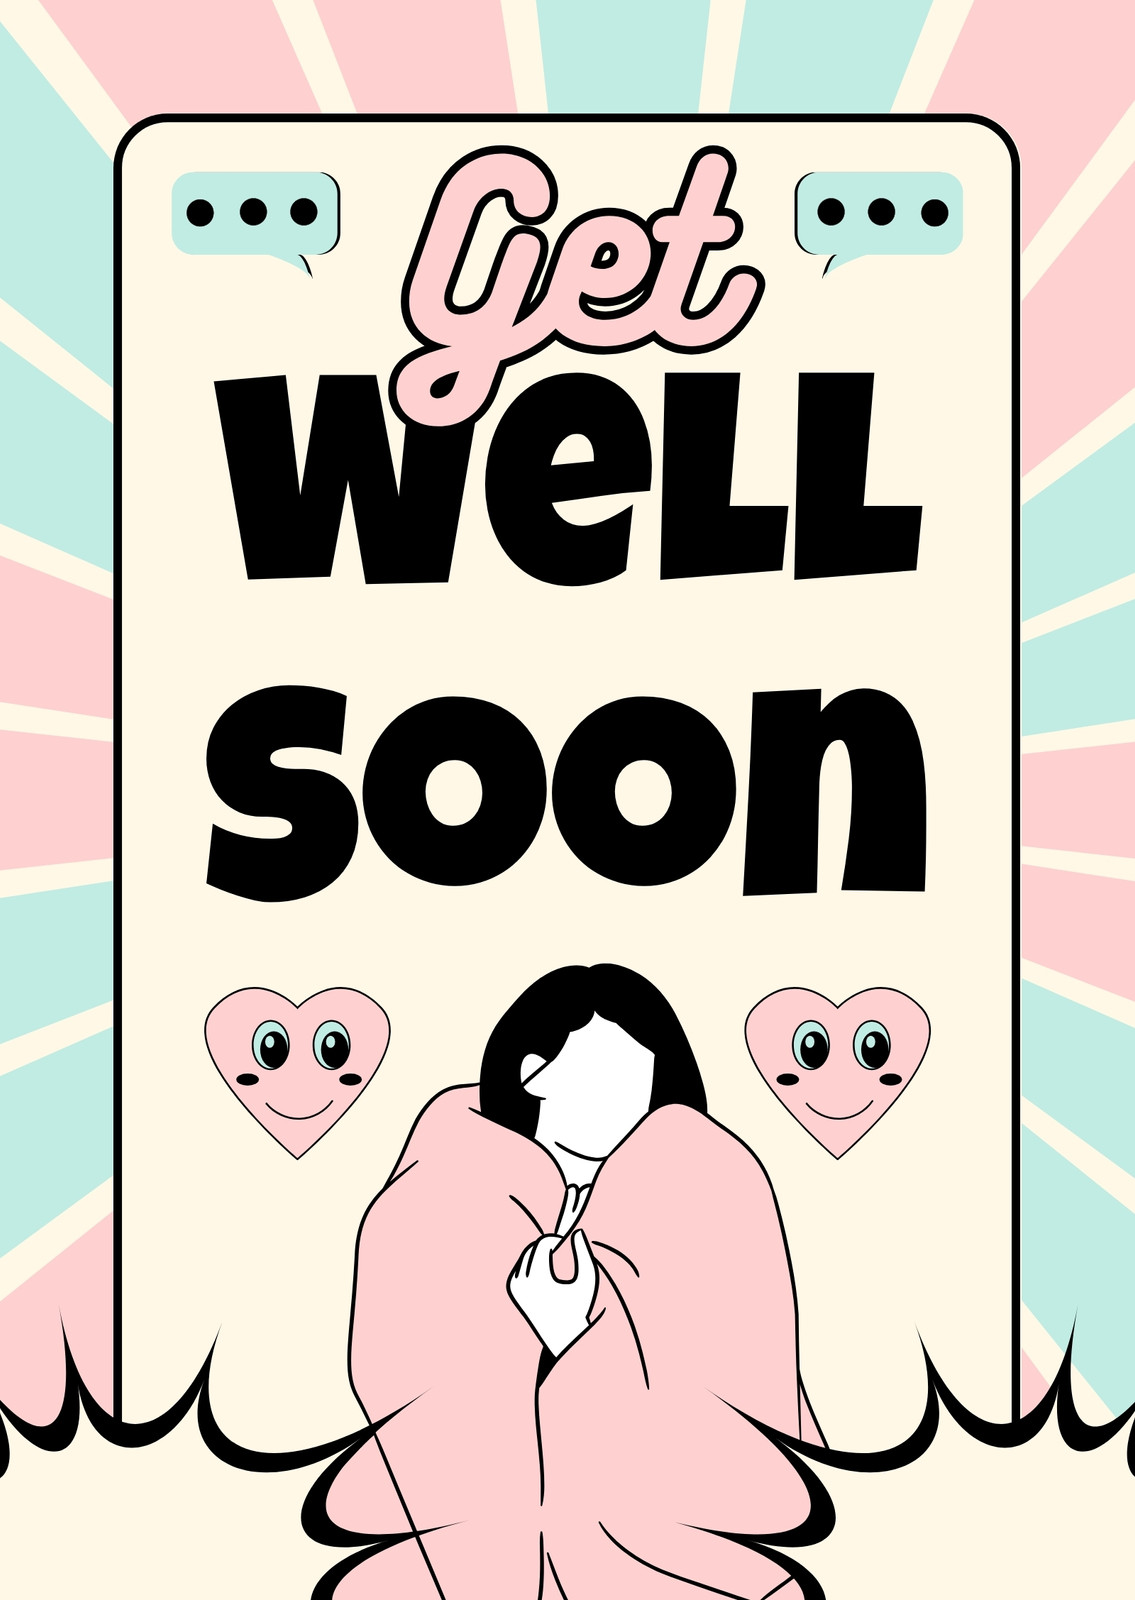 Get Well Soon Card With Teddy Bear. Vector Illustrated Card